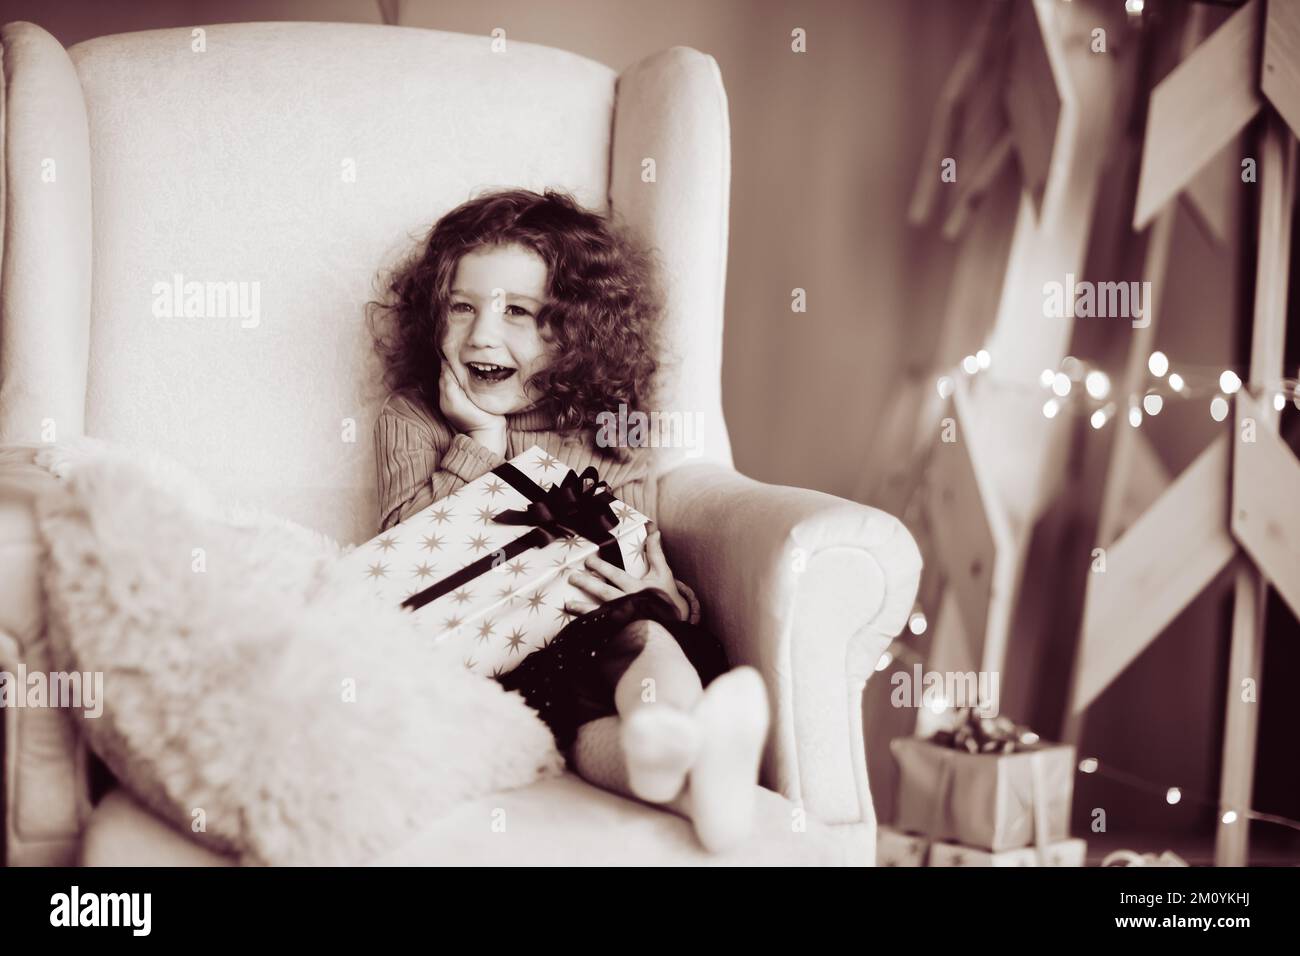 Glückliches, süßes Mädchen mit einem Weihnachtsgeschenk, das in einem gemütlichen Stuhl sitzt. Schwarzweißfoto Stockfoto